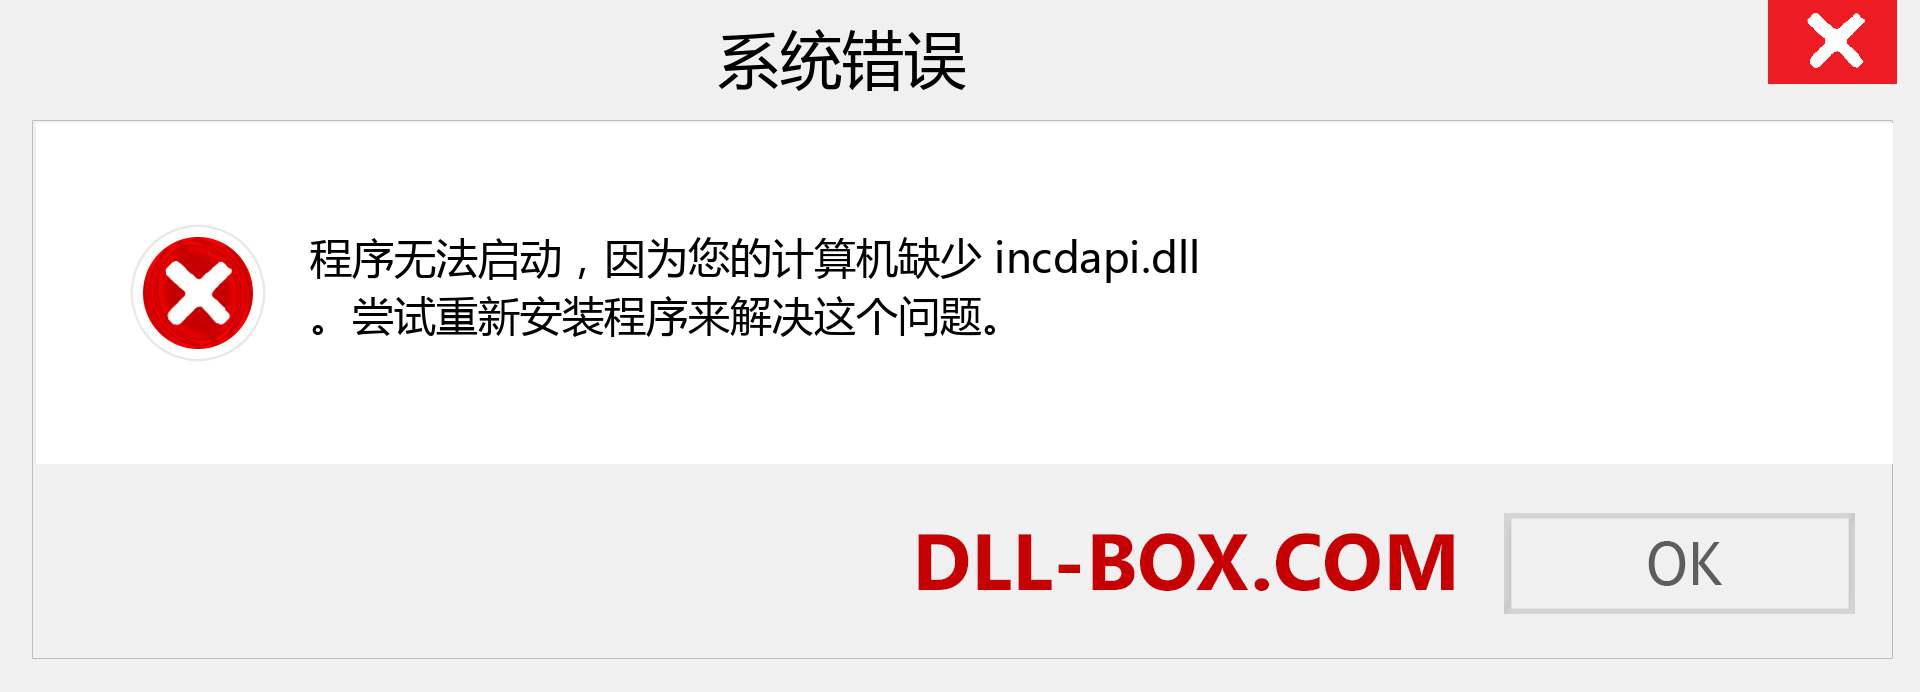 incdapi.dll 文件丢失？。 适用于 Windows 7、8、10 的下载 - 修复 Windows、照片、图像上的 incdapi dll 丢失错误